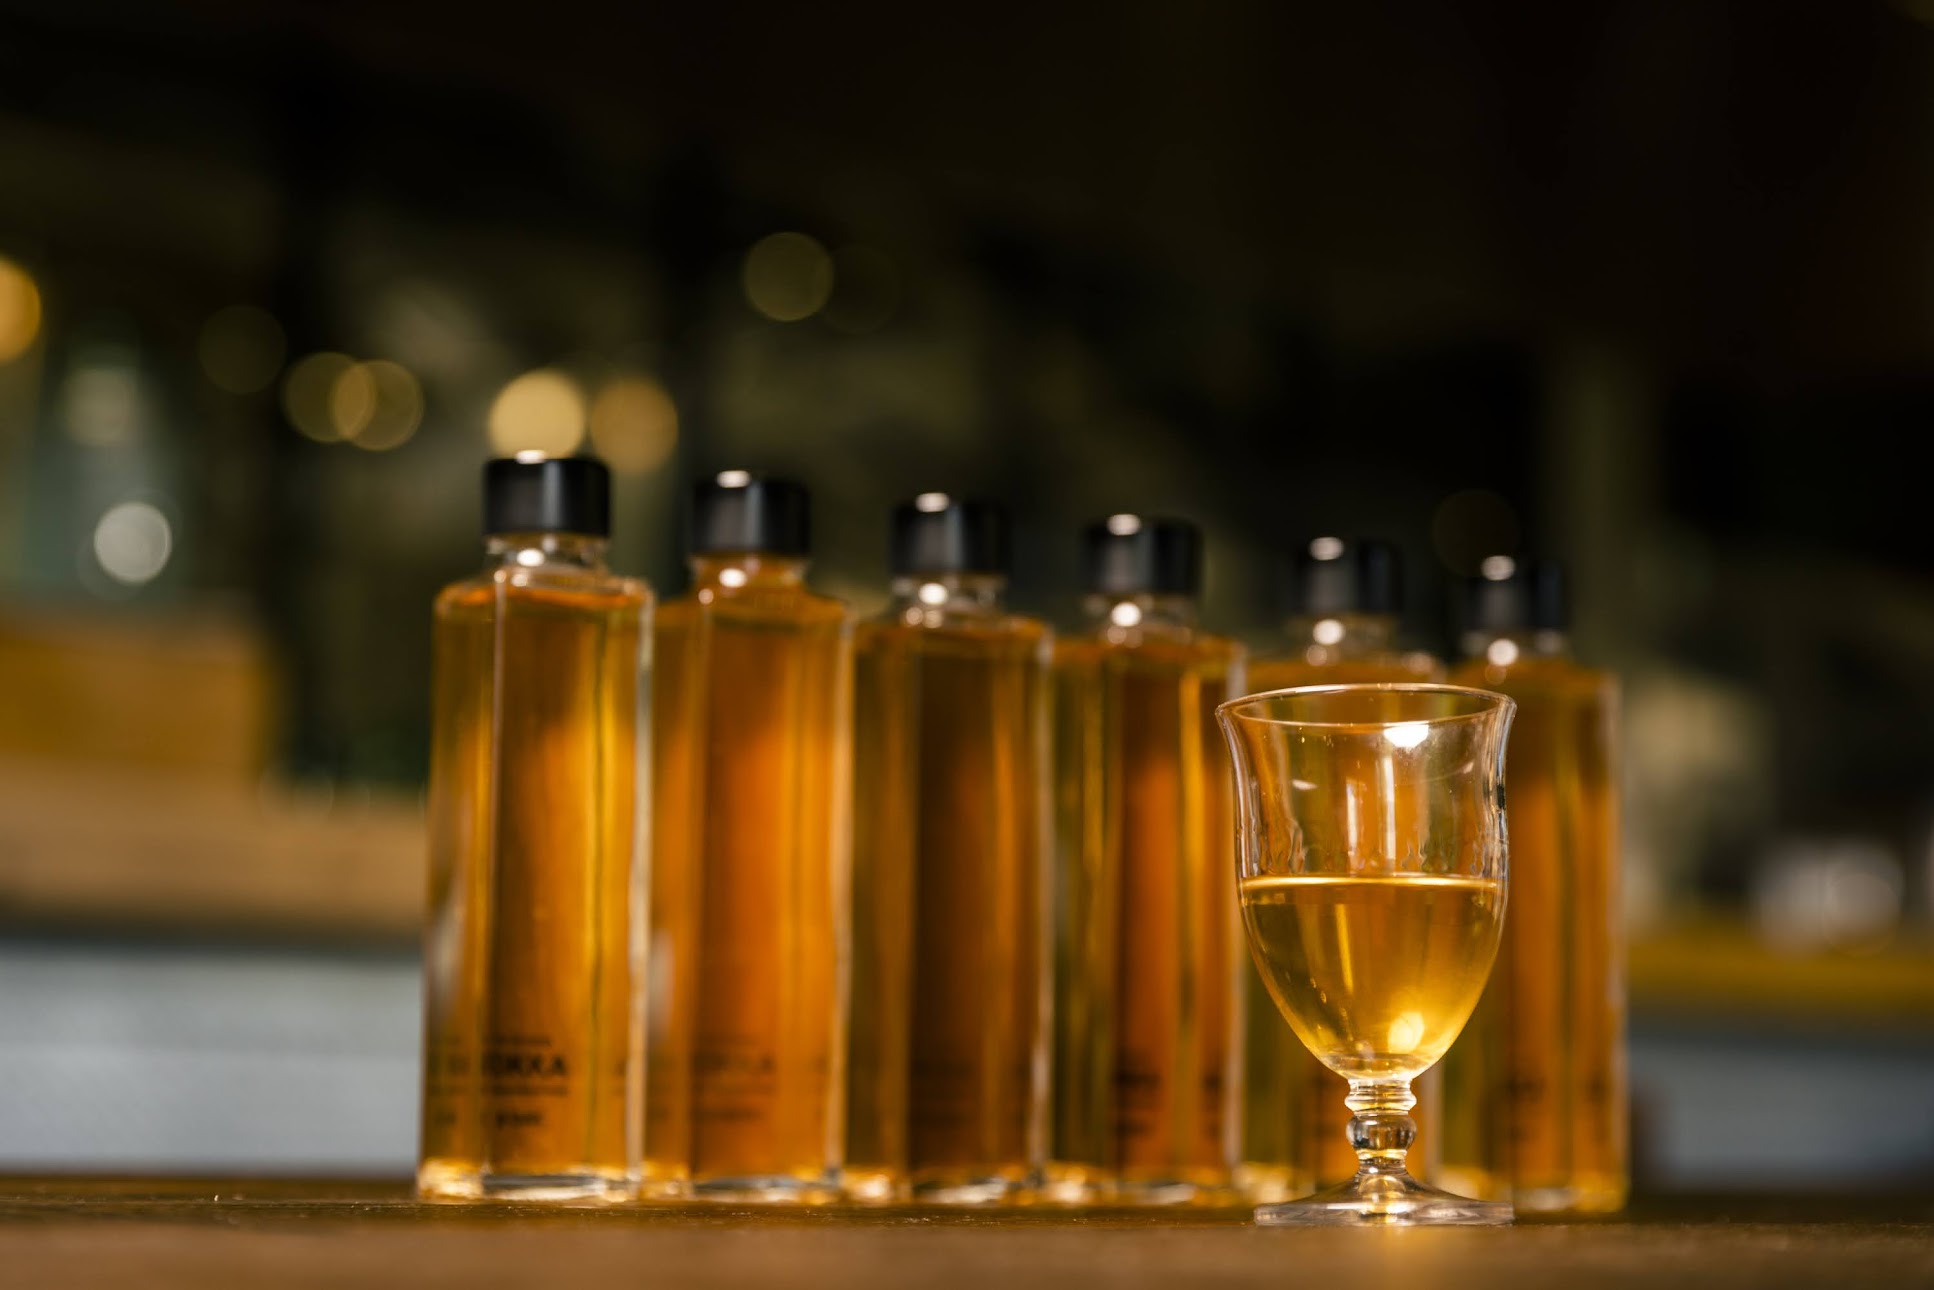 樹木薫る日本酒『BOKKA』【日本酒から和製ウイスキーを目指した新たな挑戦】クラウドファンディングMakuakeにて先行販売開始